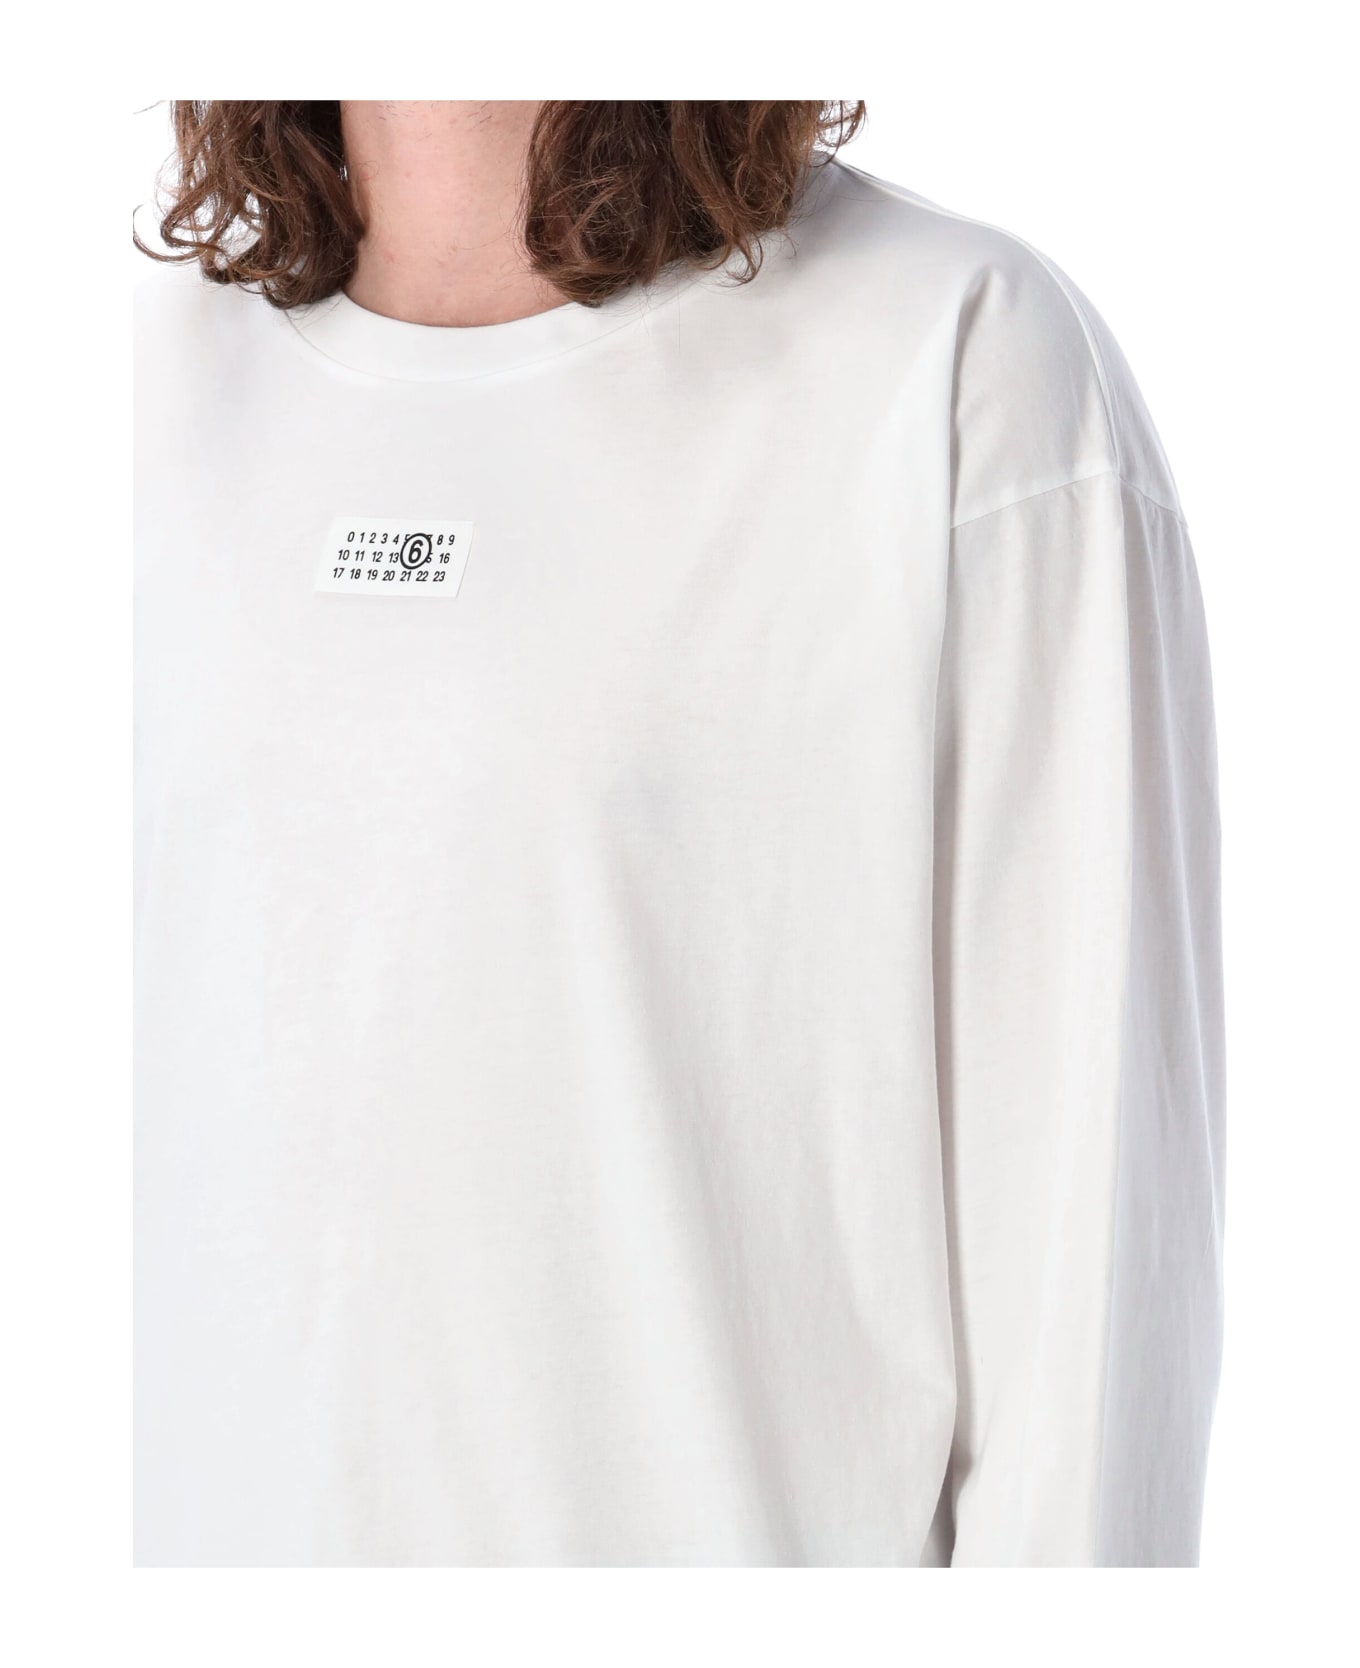 MM6 Maison Margiela Numeric Signature T-shirt - White シャツ